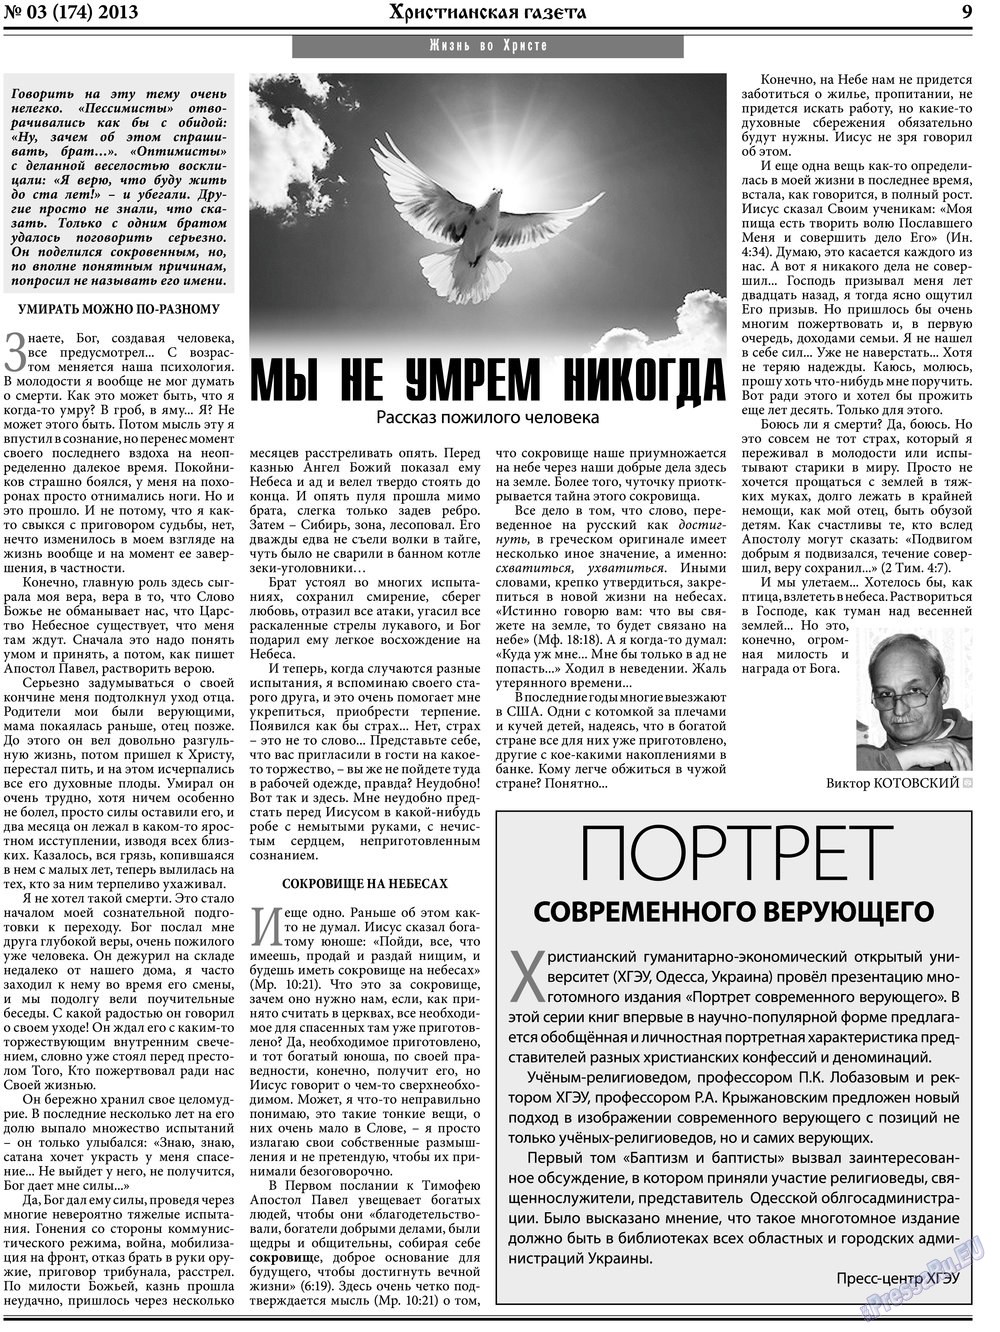 Христианская газета (газета). 2013 год, номер 3, стр. 9